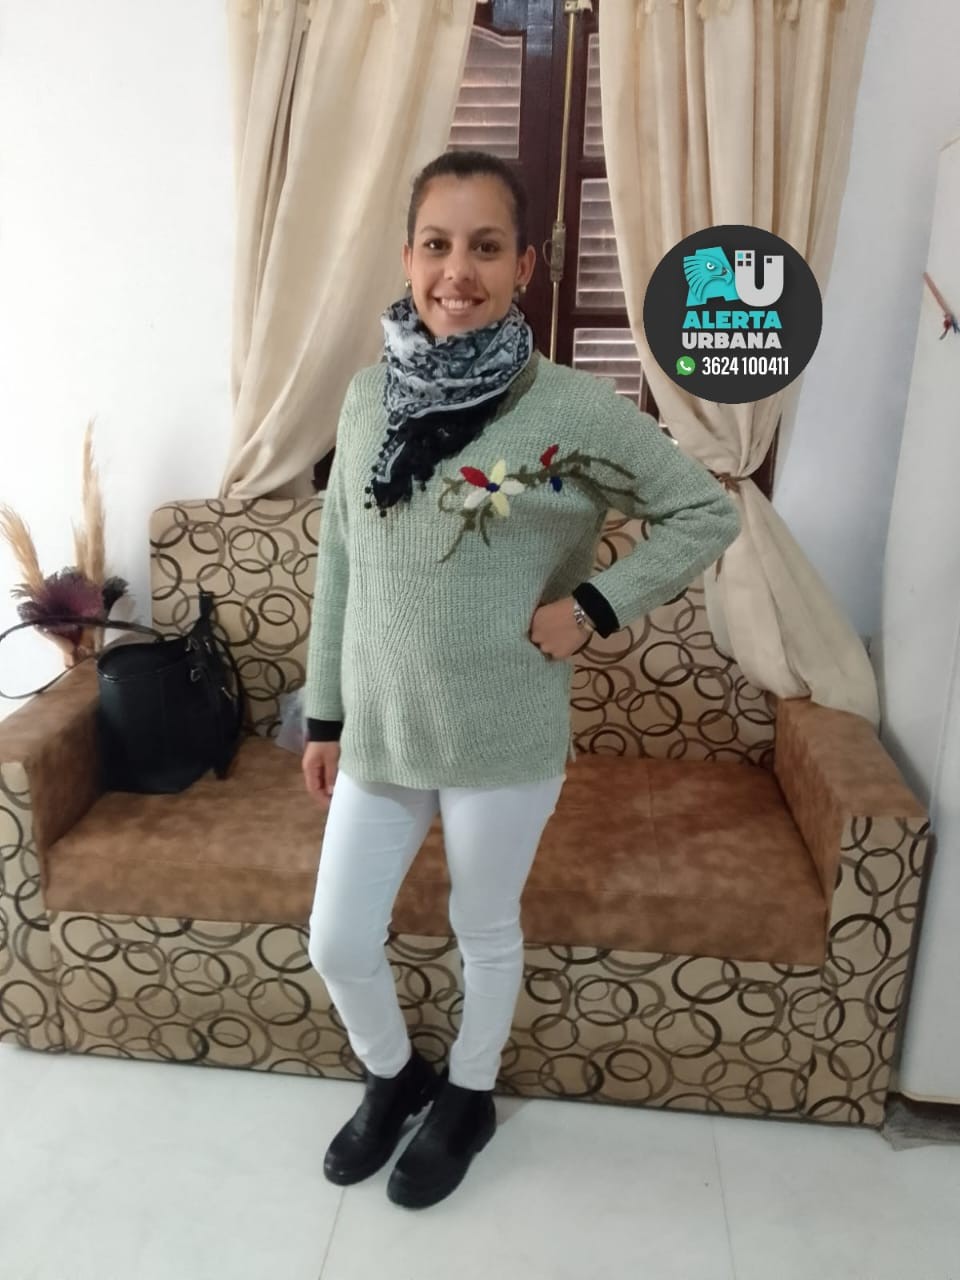 Urgente: Se busca dar con el paradero de Eliana Maira Borda Pérez de 30 años